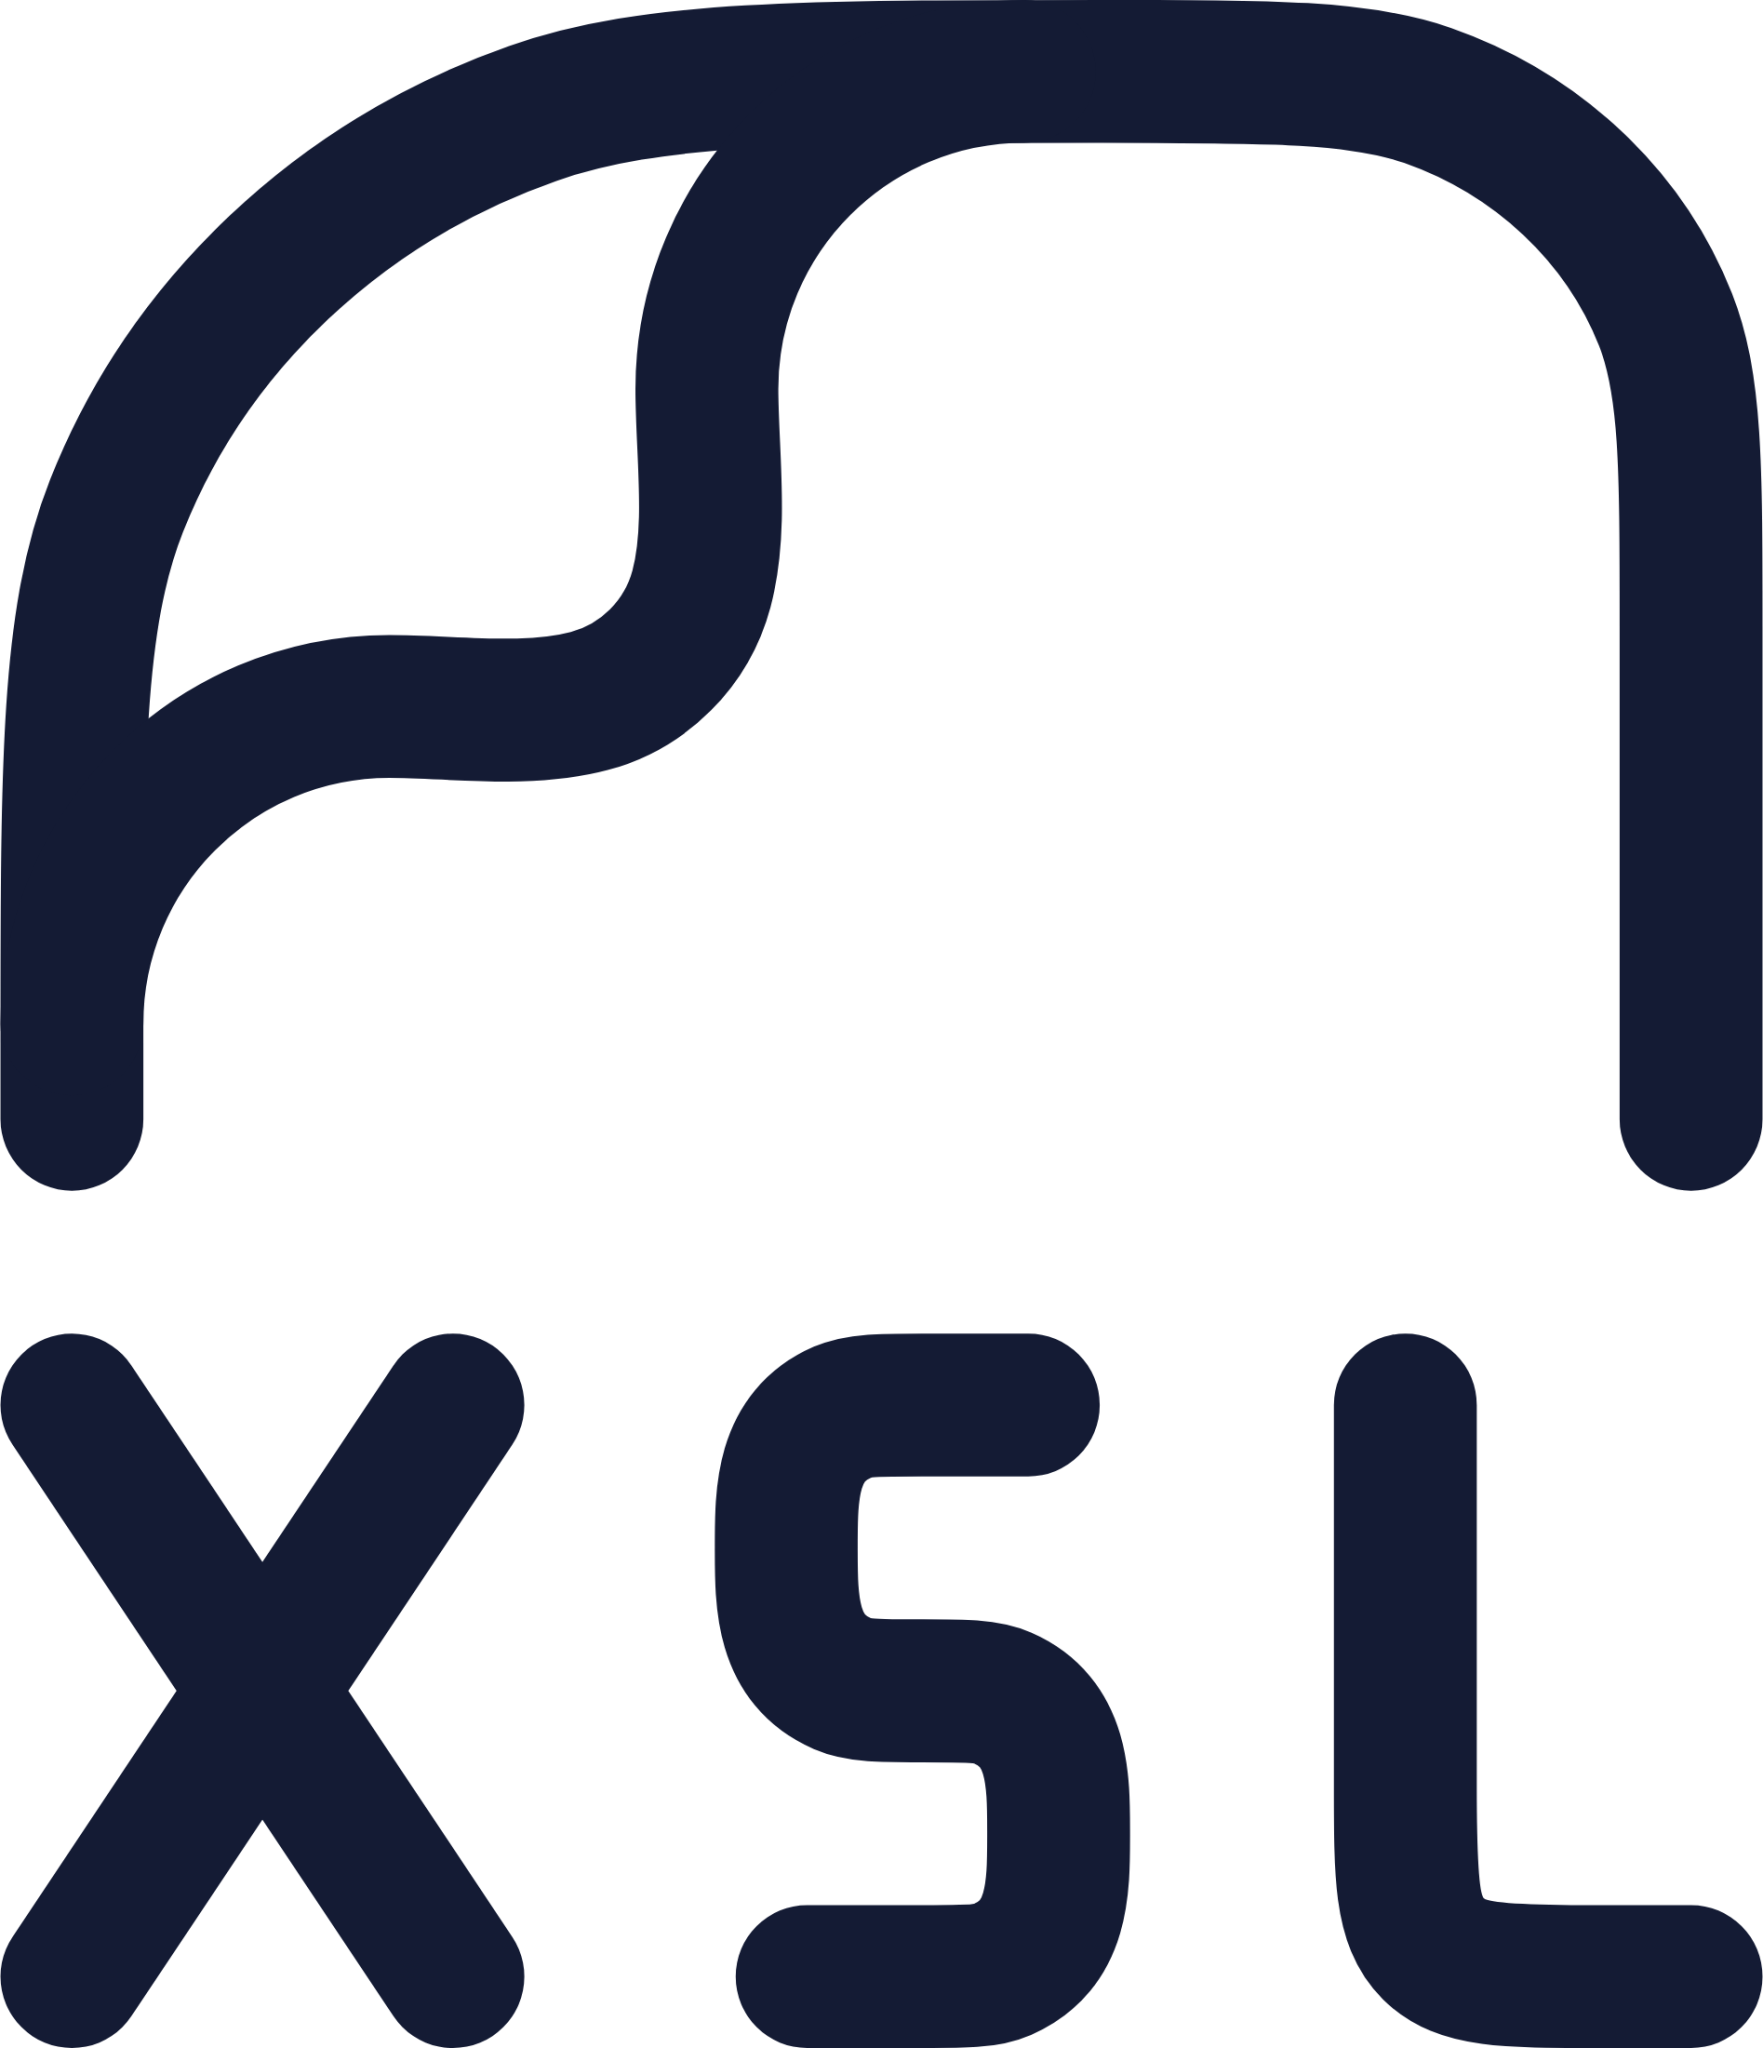 White XSL file document icon. Download xsl - Royalty Free Stock Photo ...